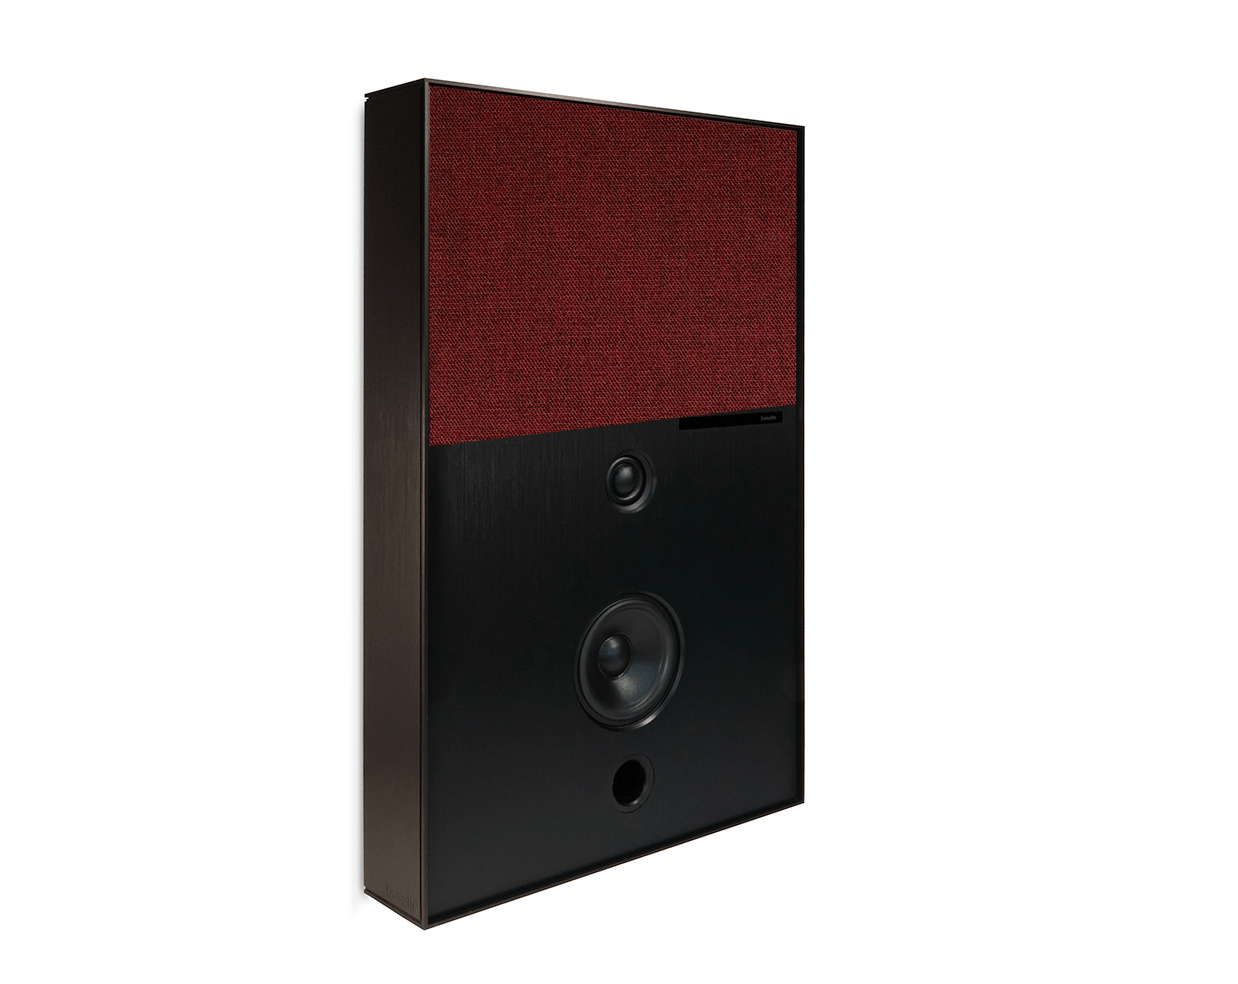 bronze and deep red aalto d3 active speaker